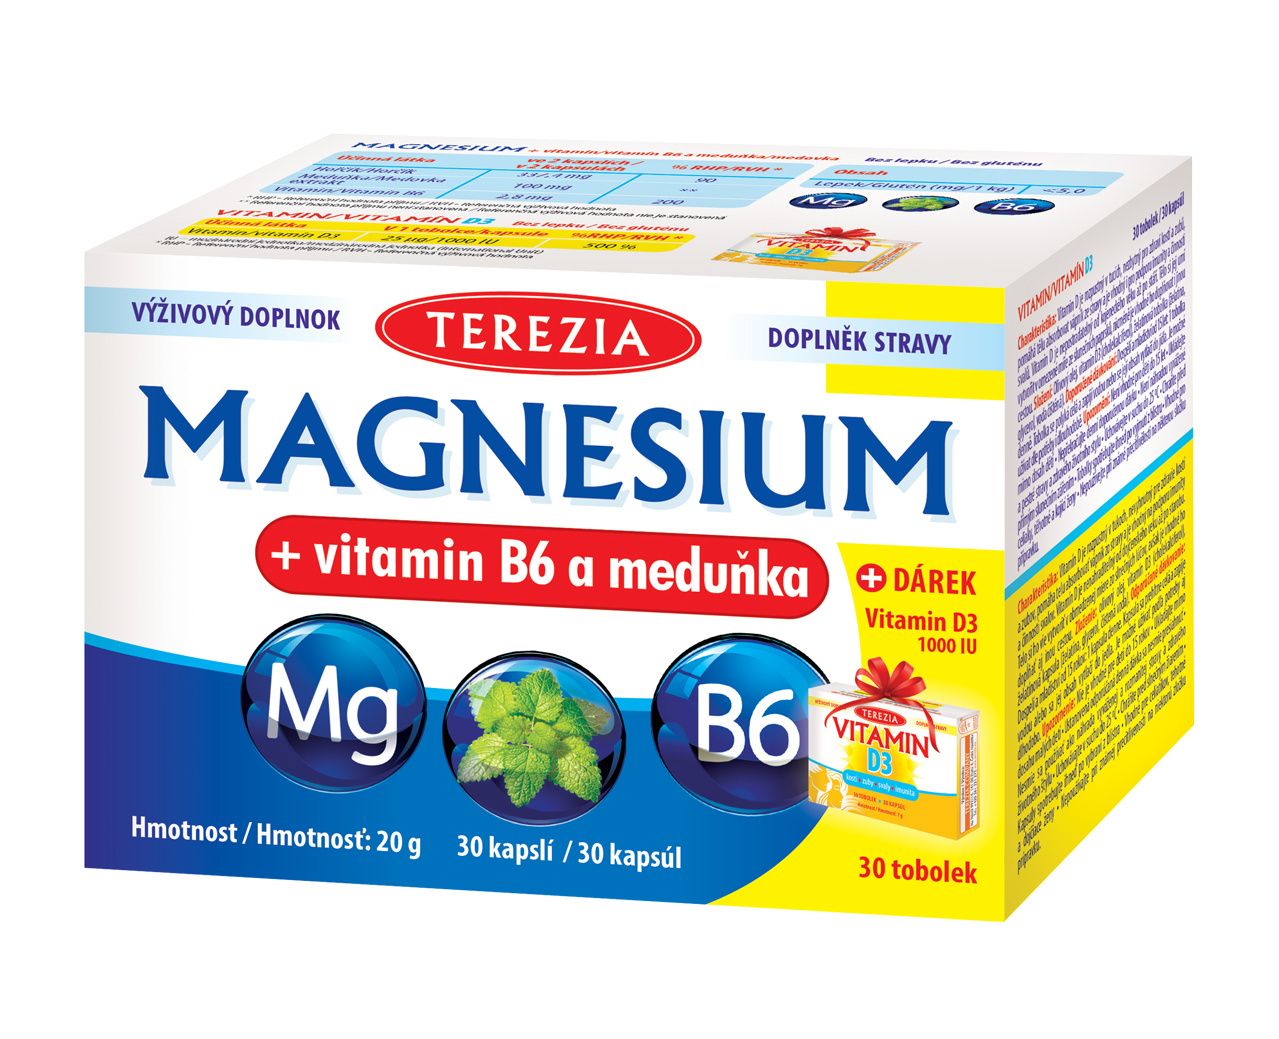 Terezia Magnesium + vitamin B6 a meduňka 30 kapslí + dárek Vitamin D3 1000 IU 30 tobolek Terezia